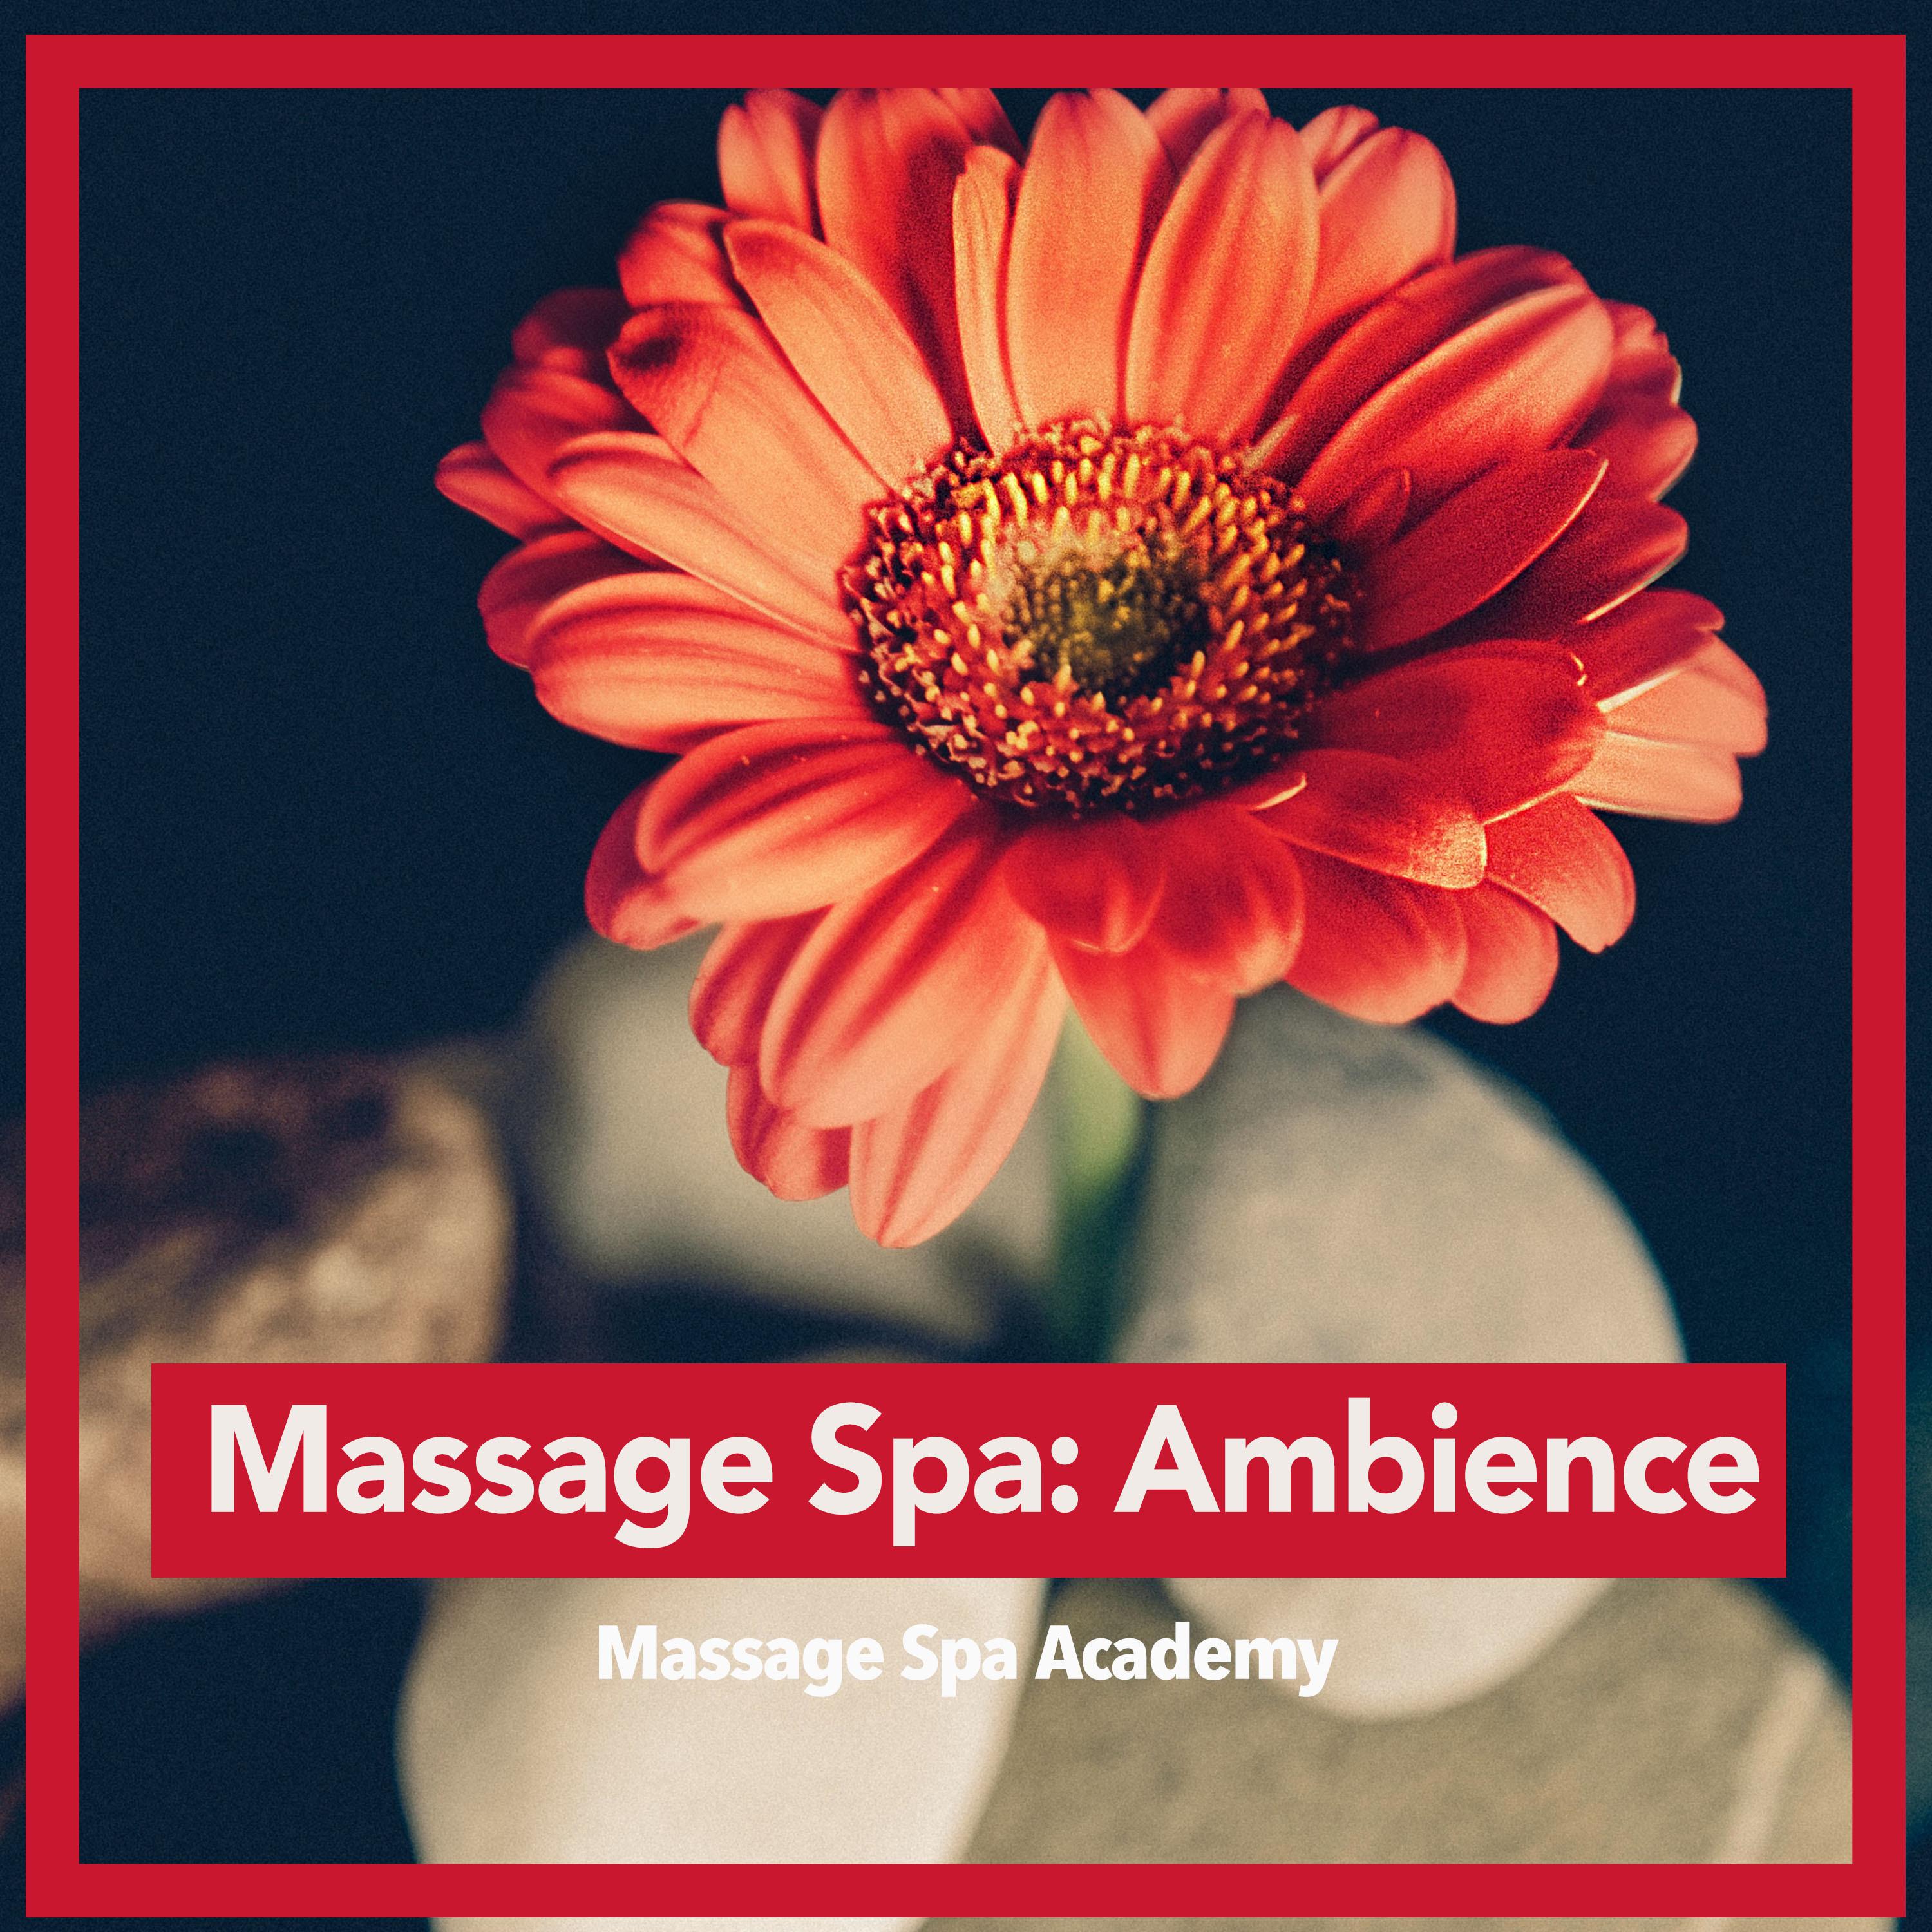 Massage Spa: Ambience